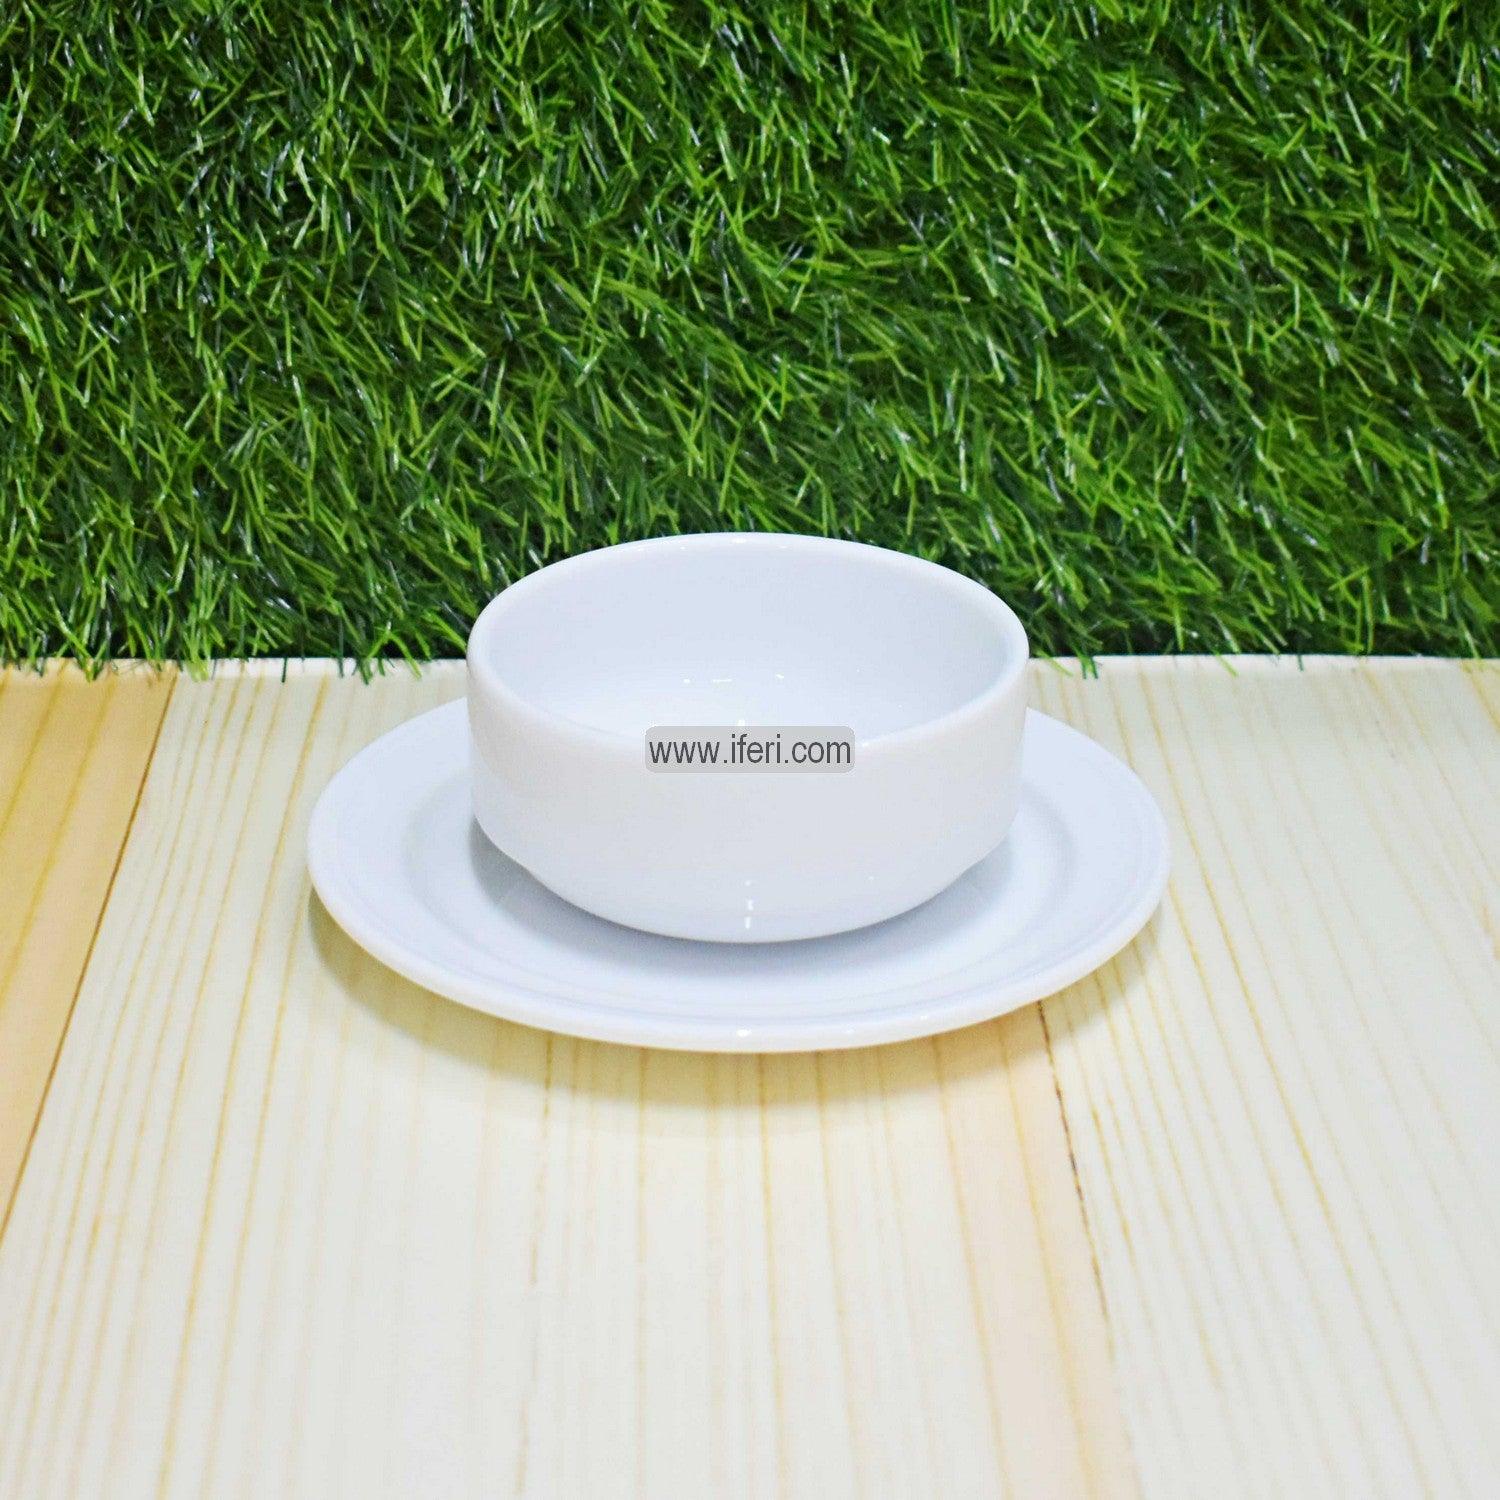 12 pcs White Ceramic Soup Set SN0665 Price in Bangladesh - iferi.com